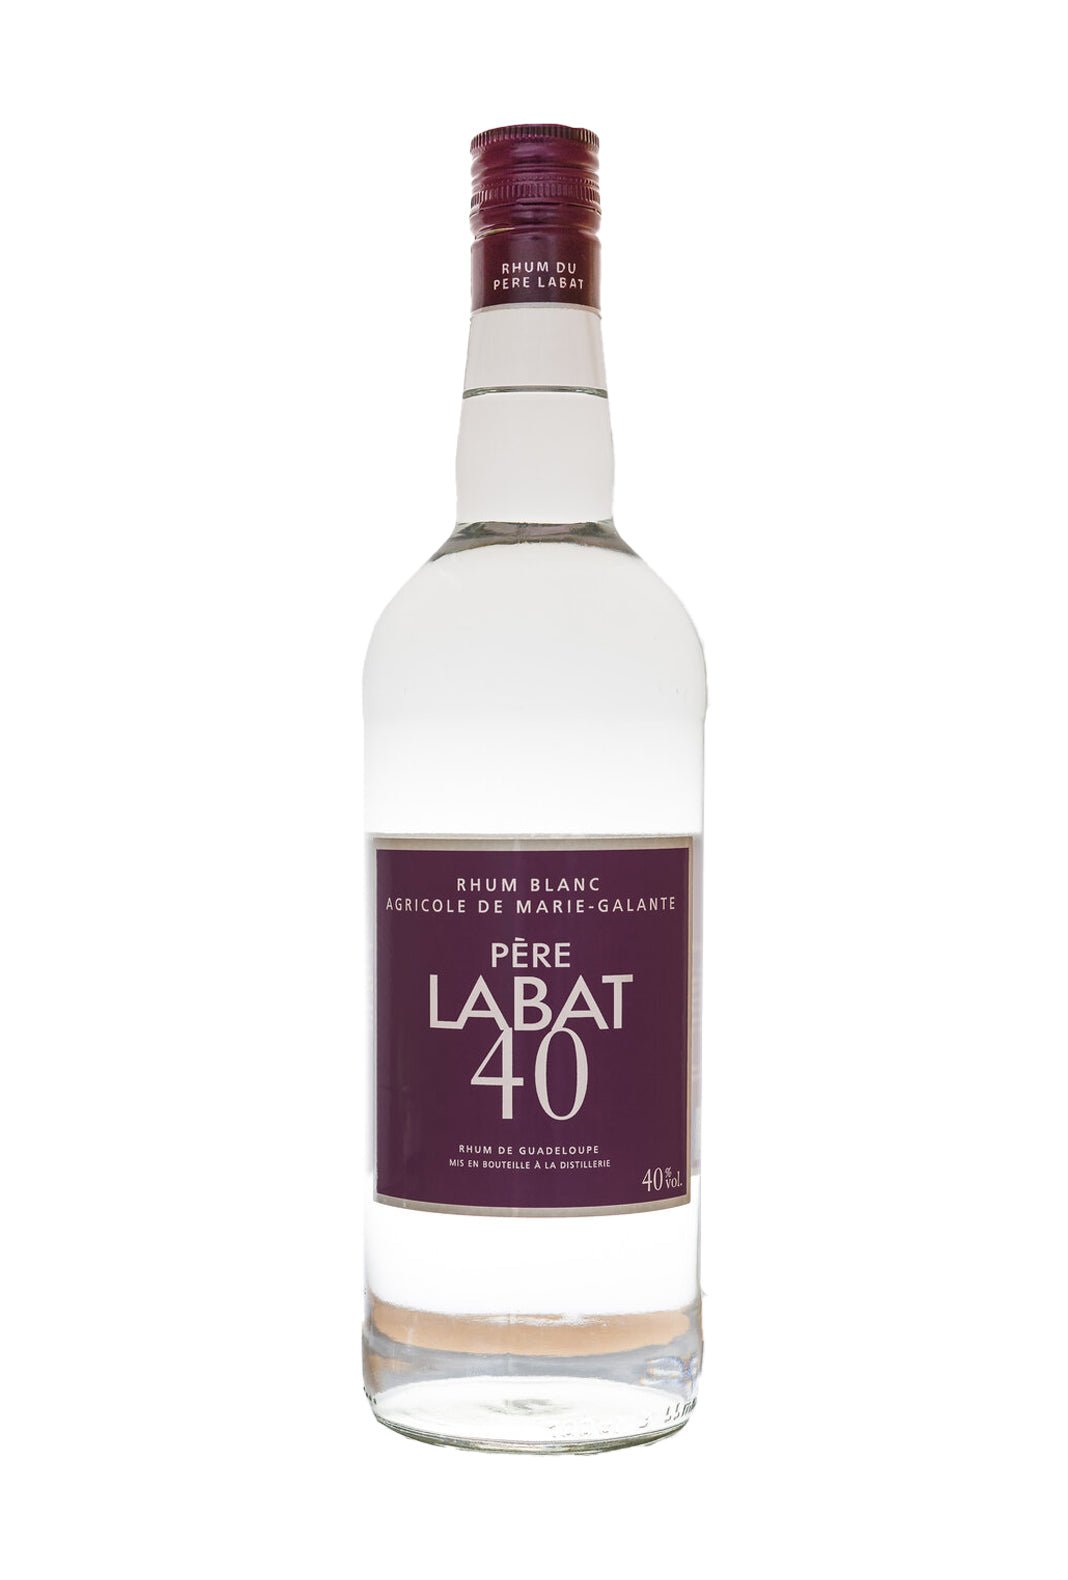 Labat Rum White Rum 40% 700ml | Rum | Shop online at Spirits of France